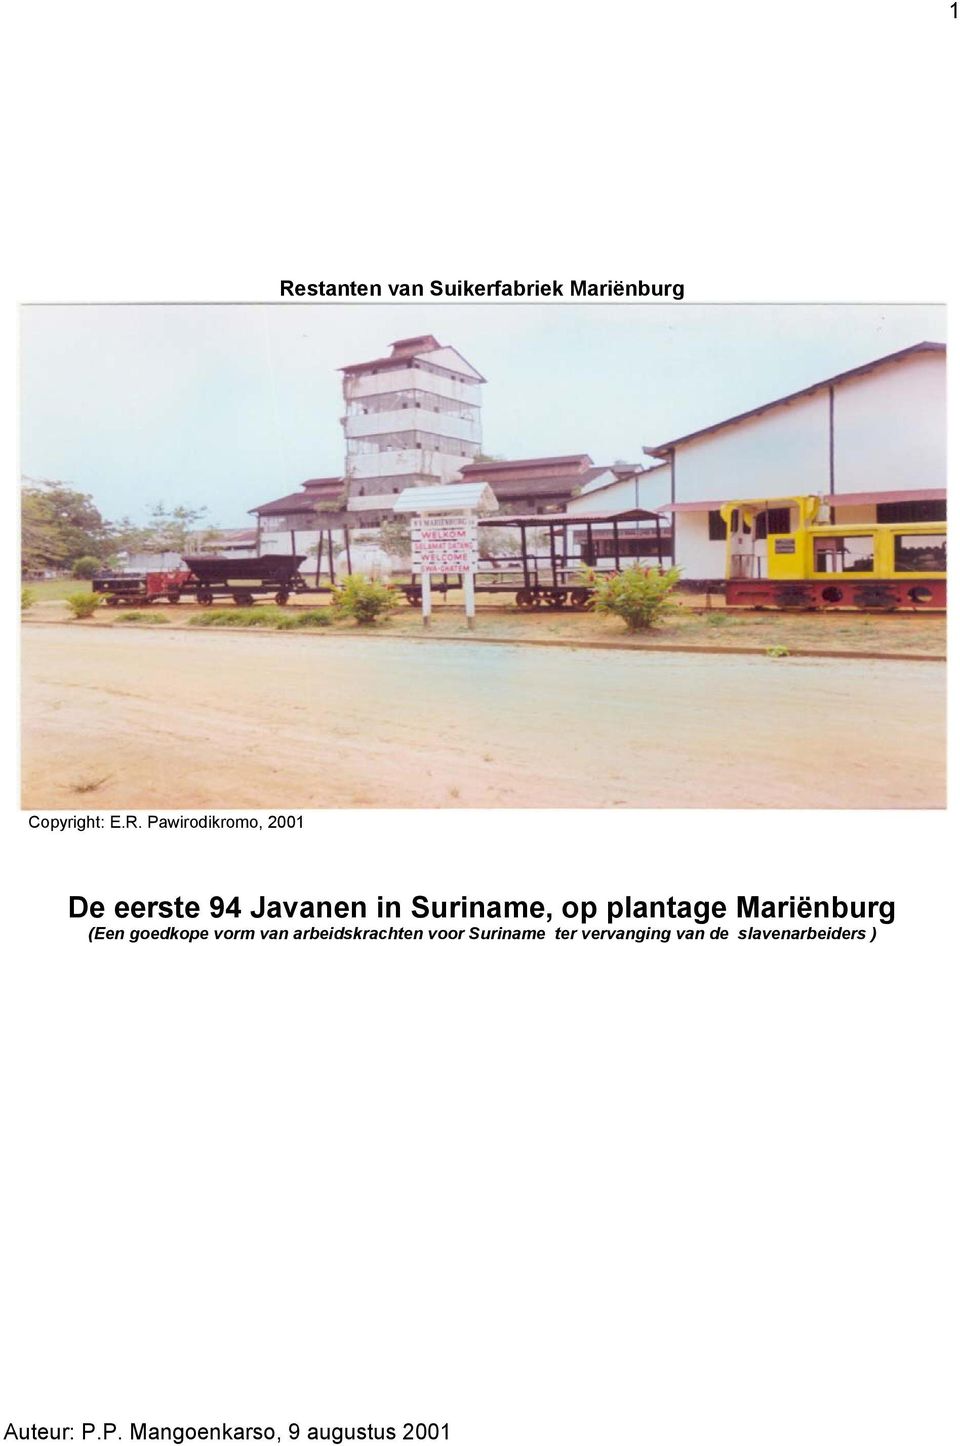 Mariënburg (Een goedkope vorm van arbeidskrachten voor Suriname ter